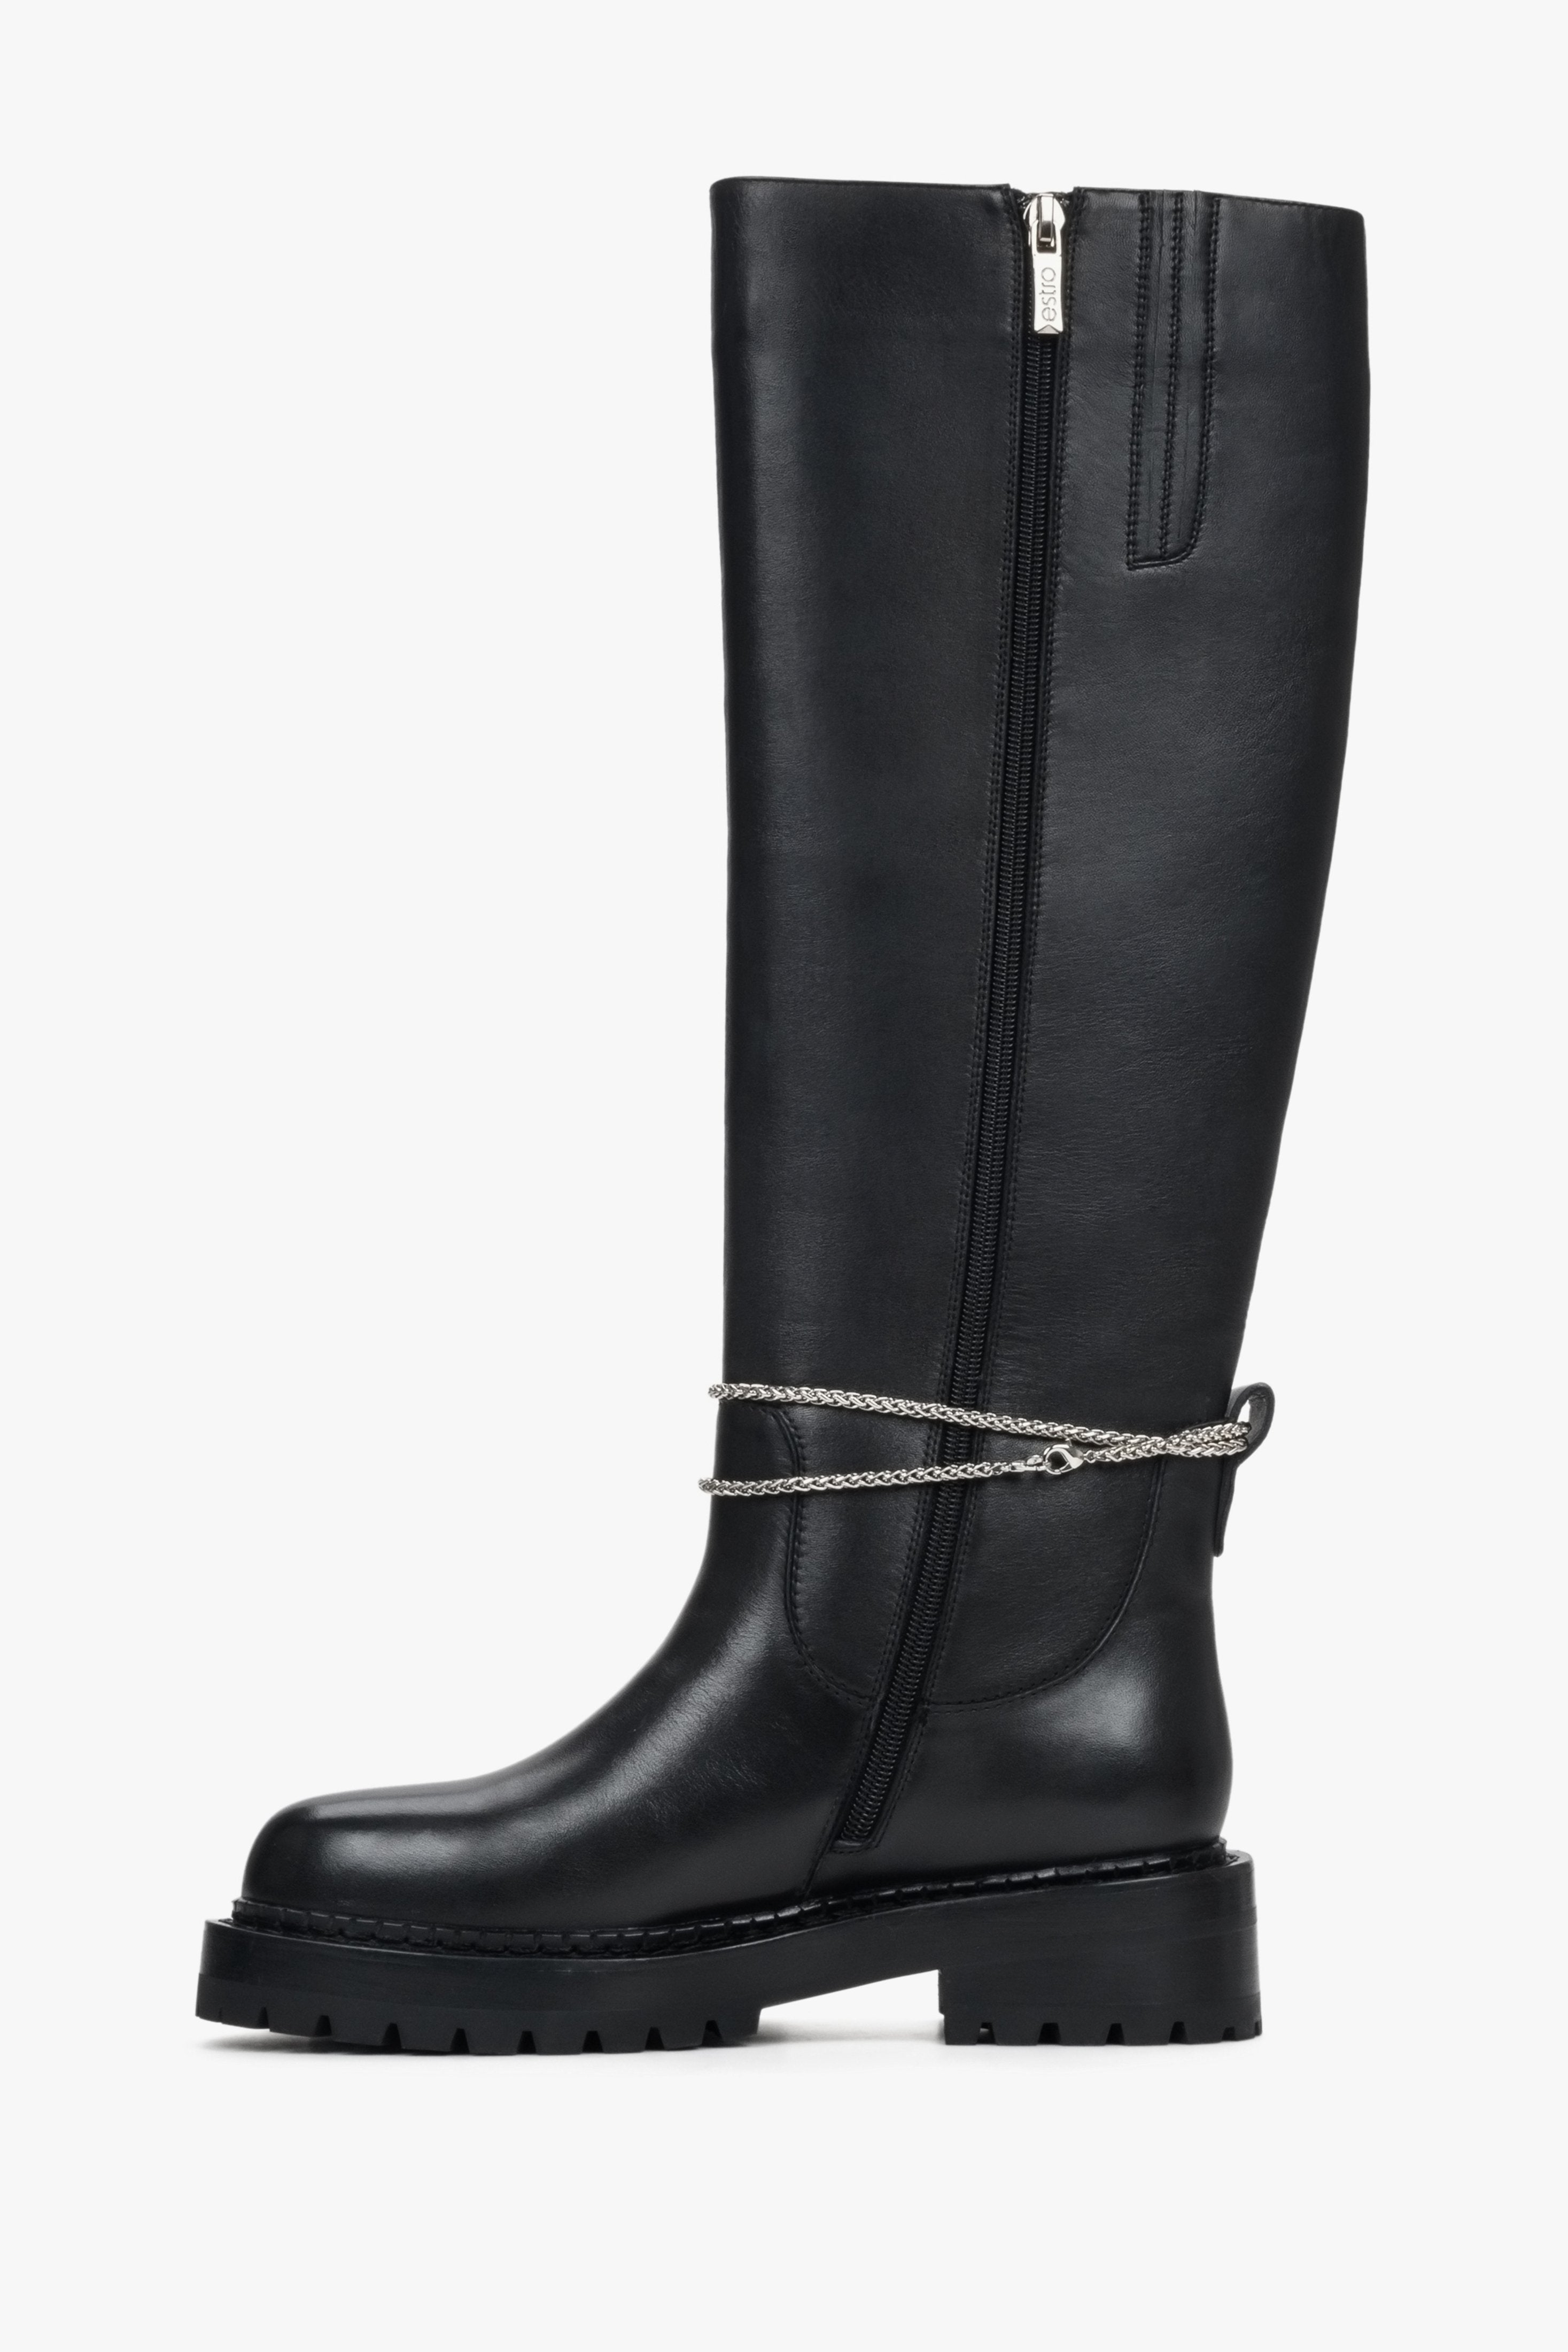 Skórzane, wysokie kozaki damskie na zimę w kolorze czarnym marki Estro - profil buta.